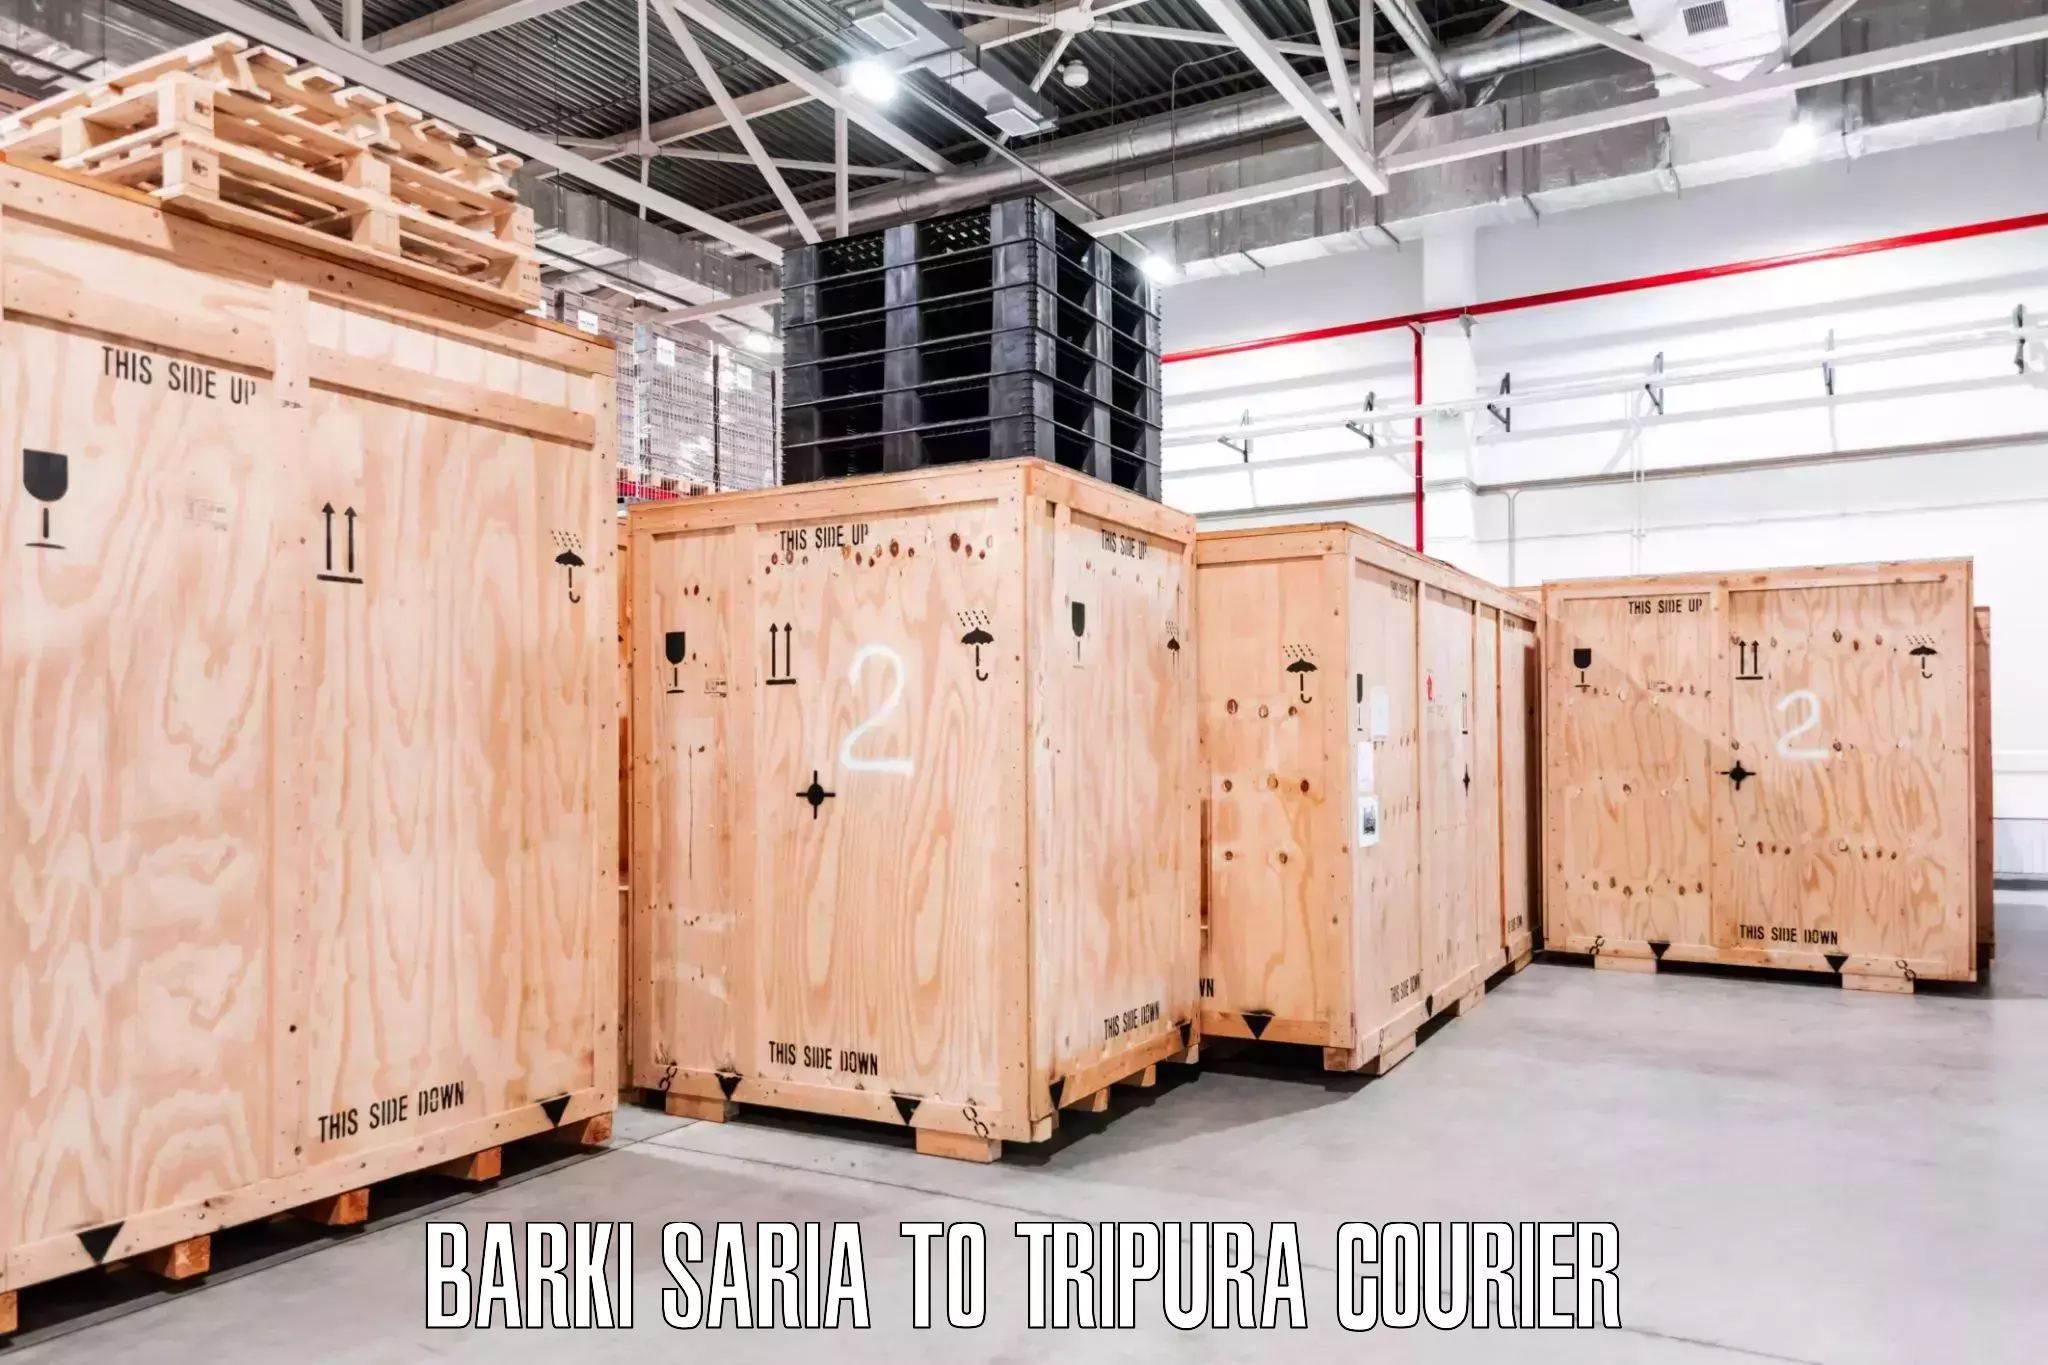 Efficient moving company Barki Saria to Khowai